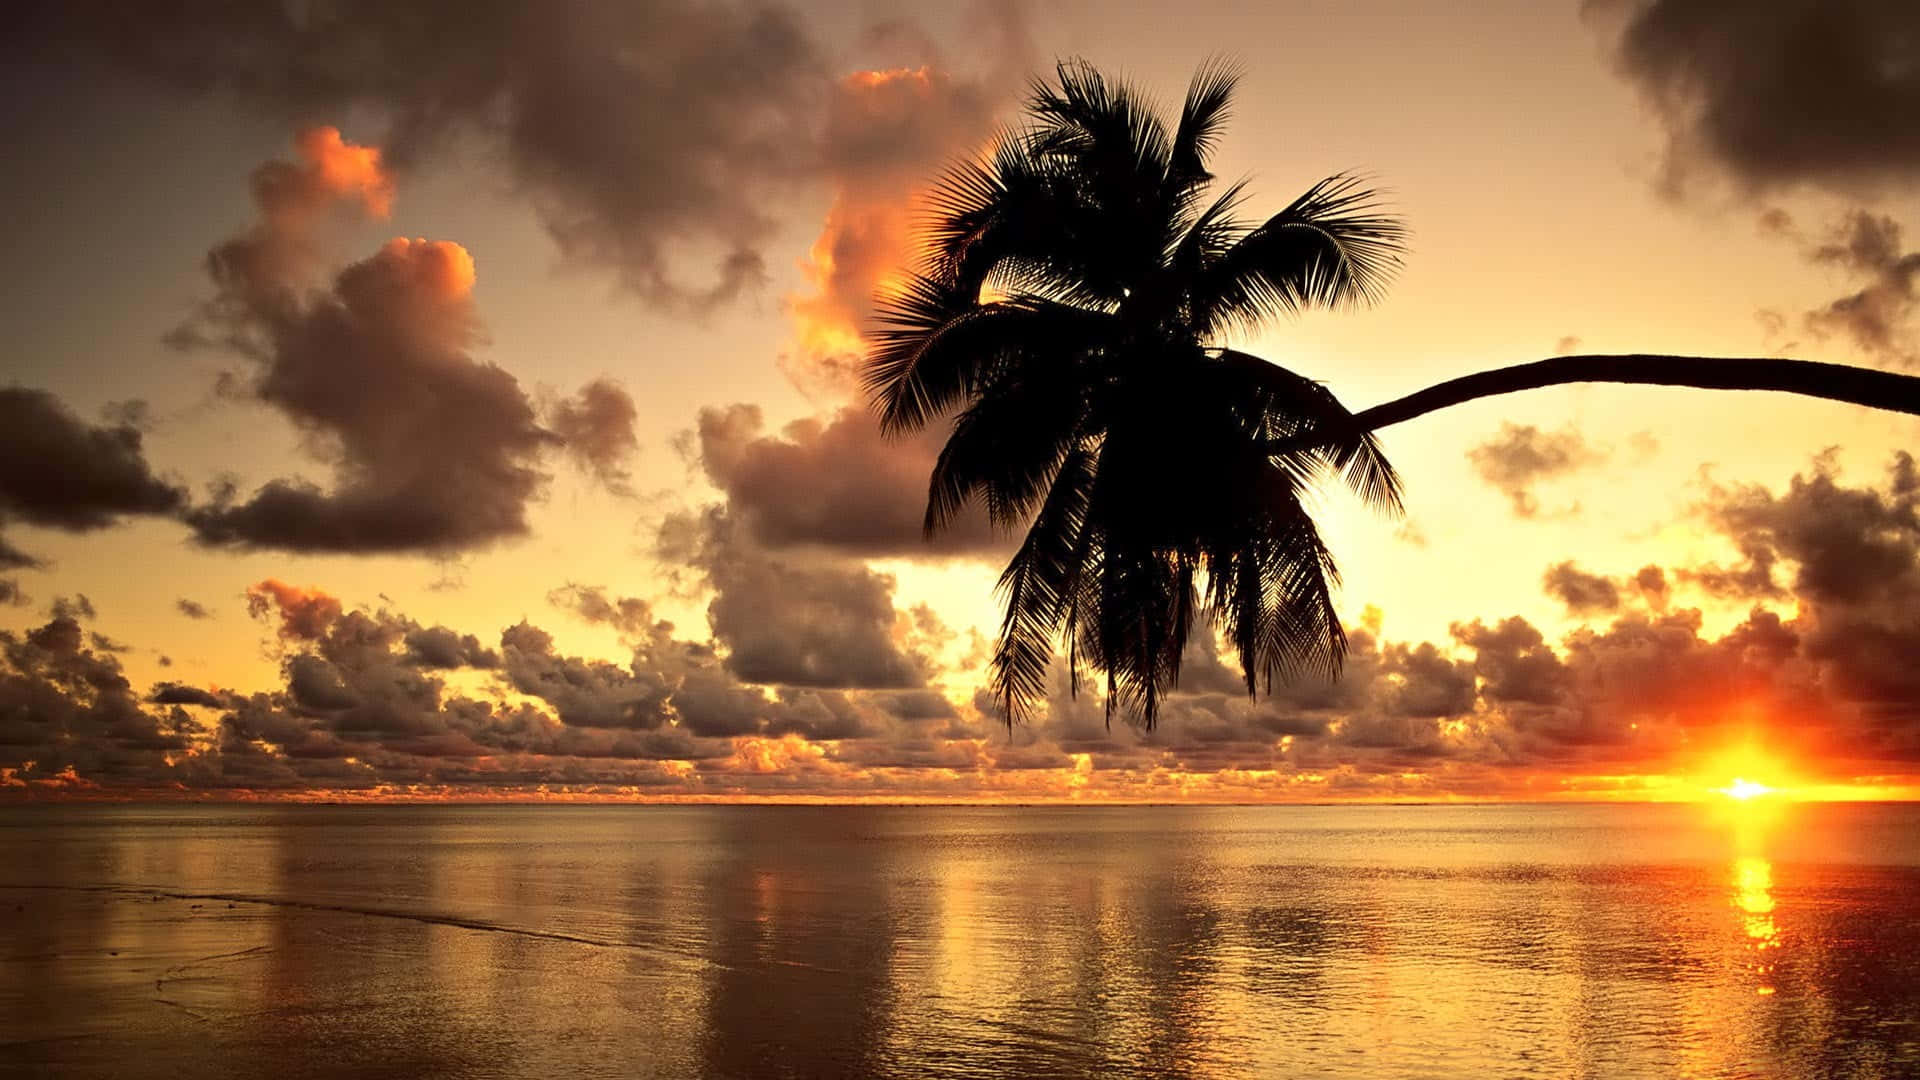 "Paradise Awaits - A Stunning Hawaiian Sunset View" Wallpaper